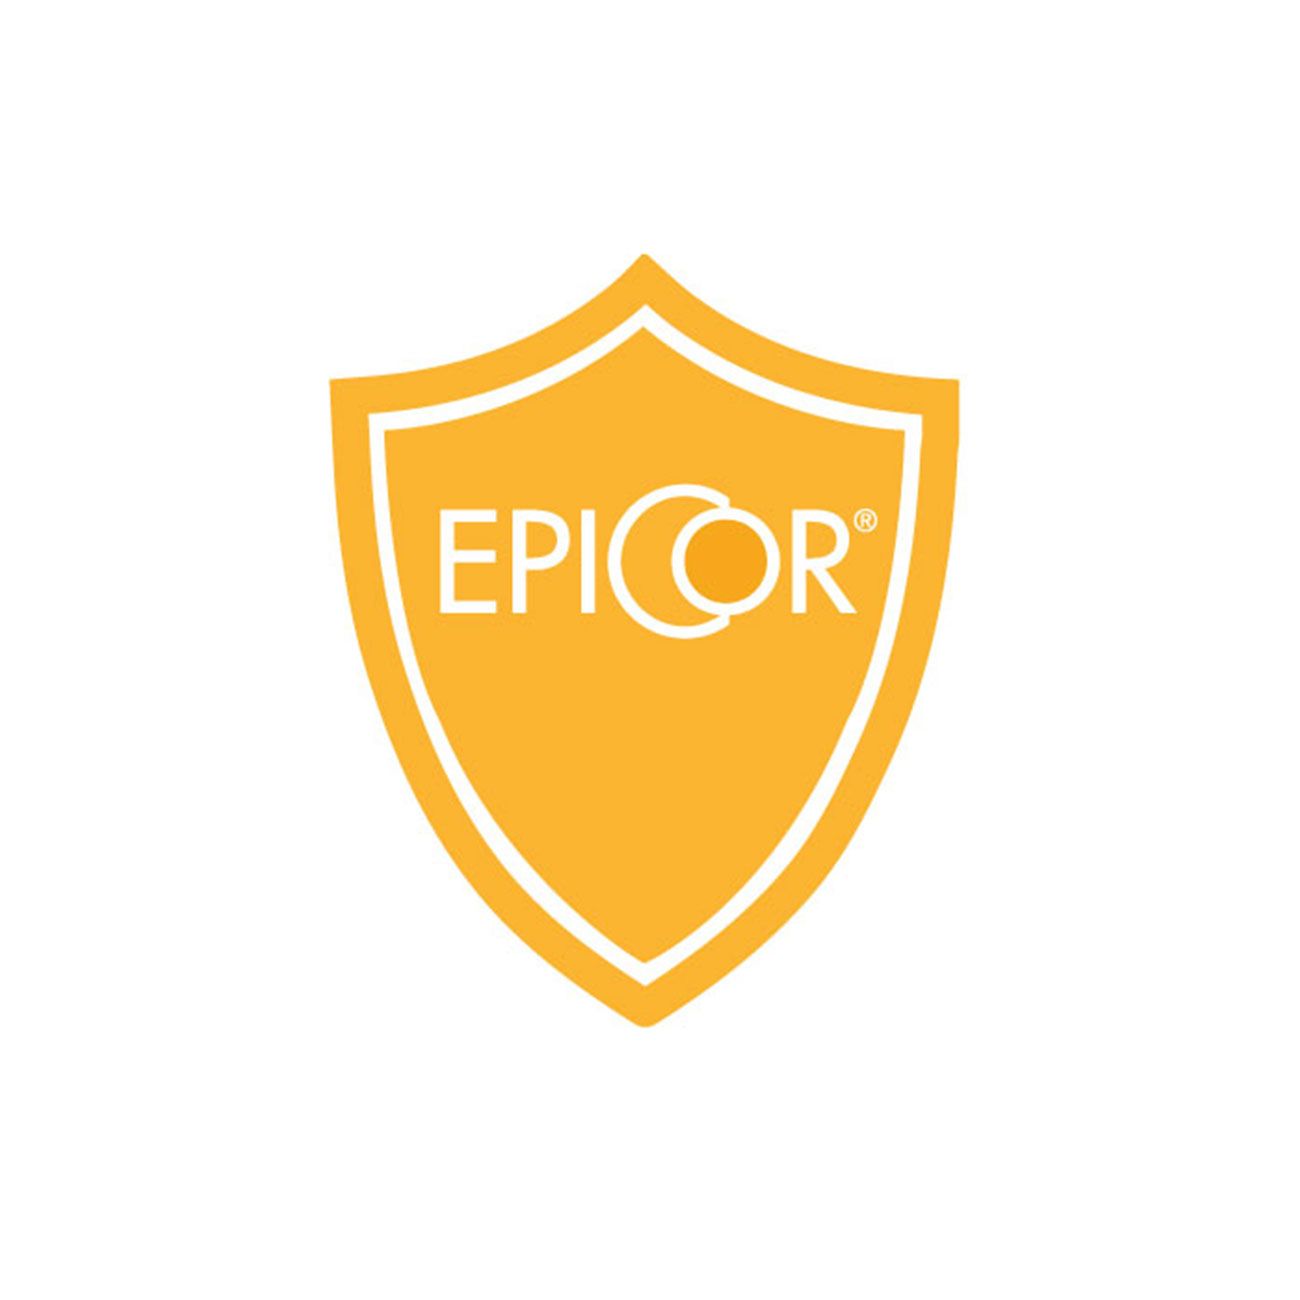 EpiCor® - Cjelovit sastojak dodatka prehrani za potporu zdravlju imuniteta - logo